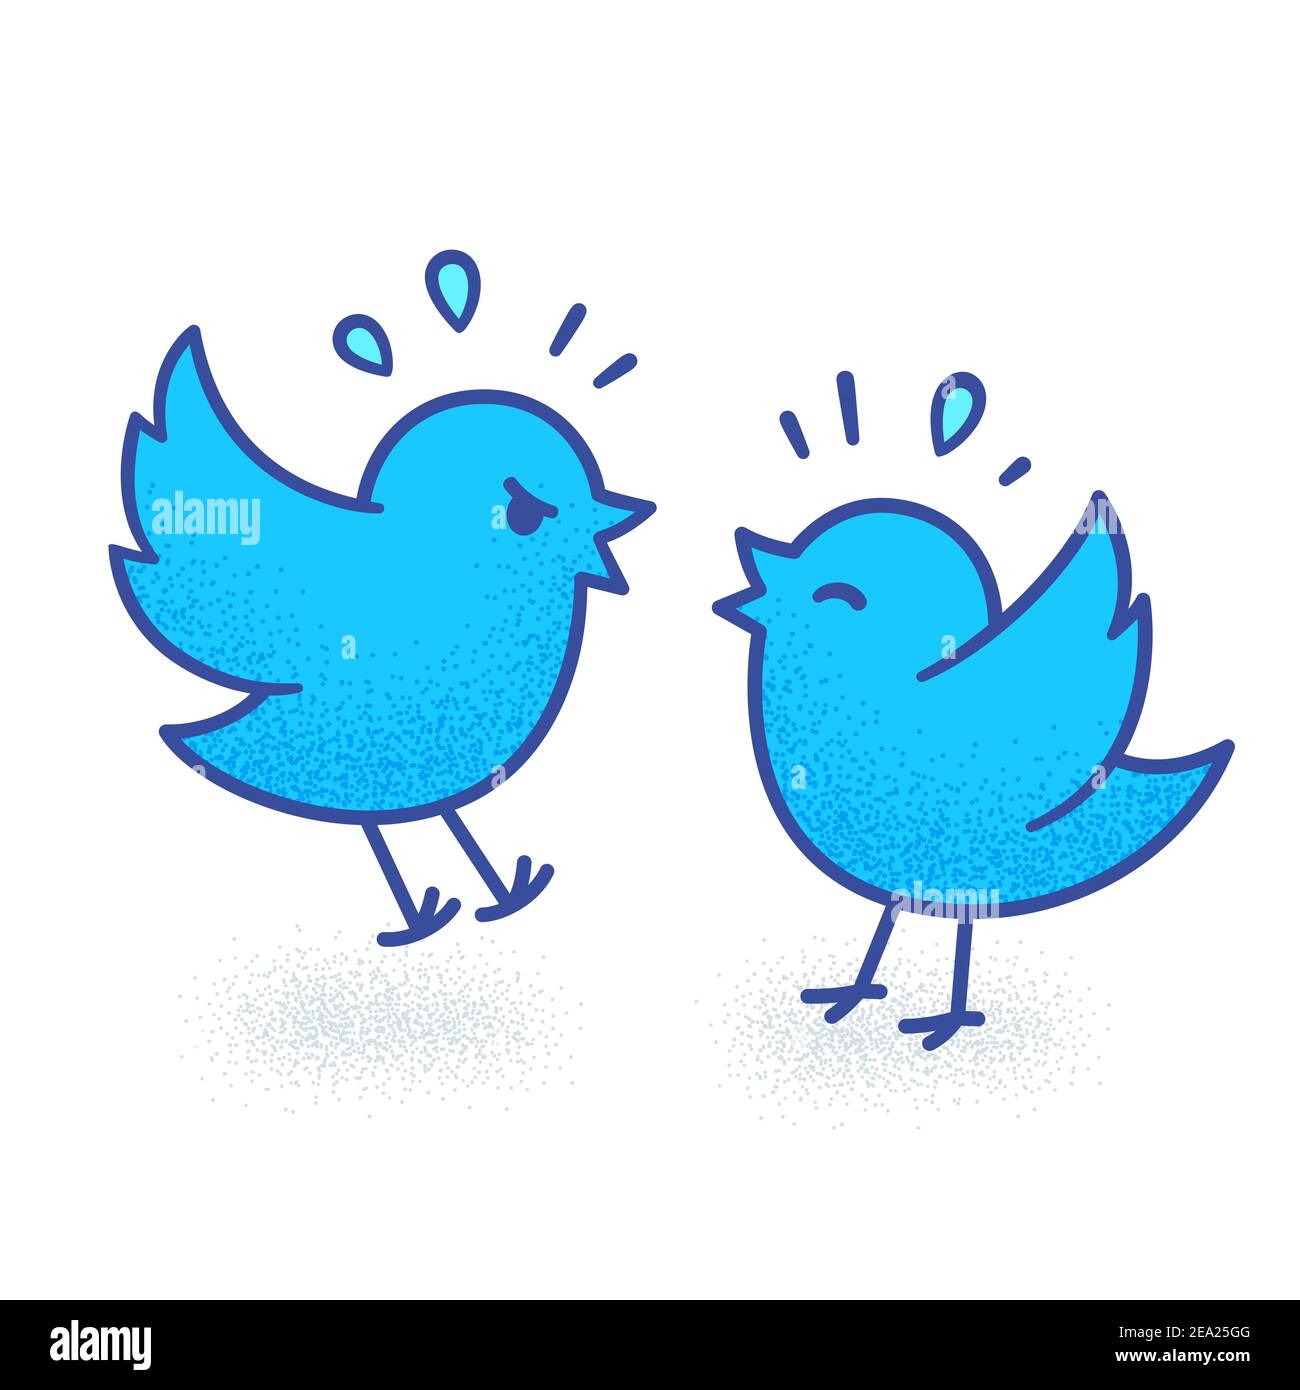 30 janvier 2021. Illustration de deux caricatures de combats d'oiseaux sur Twitter, disputant sur les médias sociaux. Joli dessin amusant de vecteur. Illustration de Vecteur